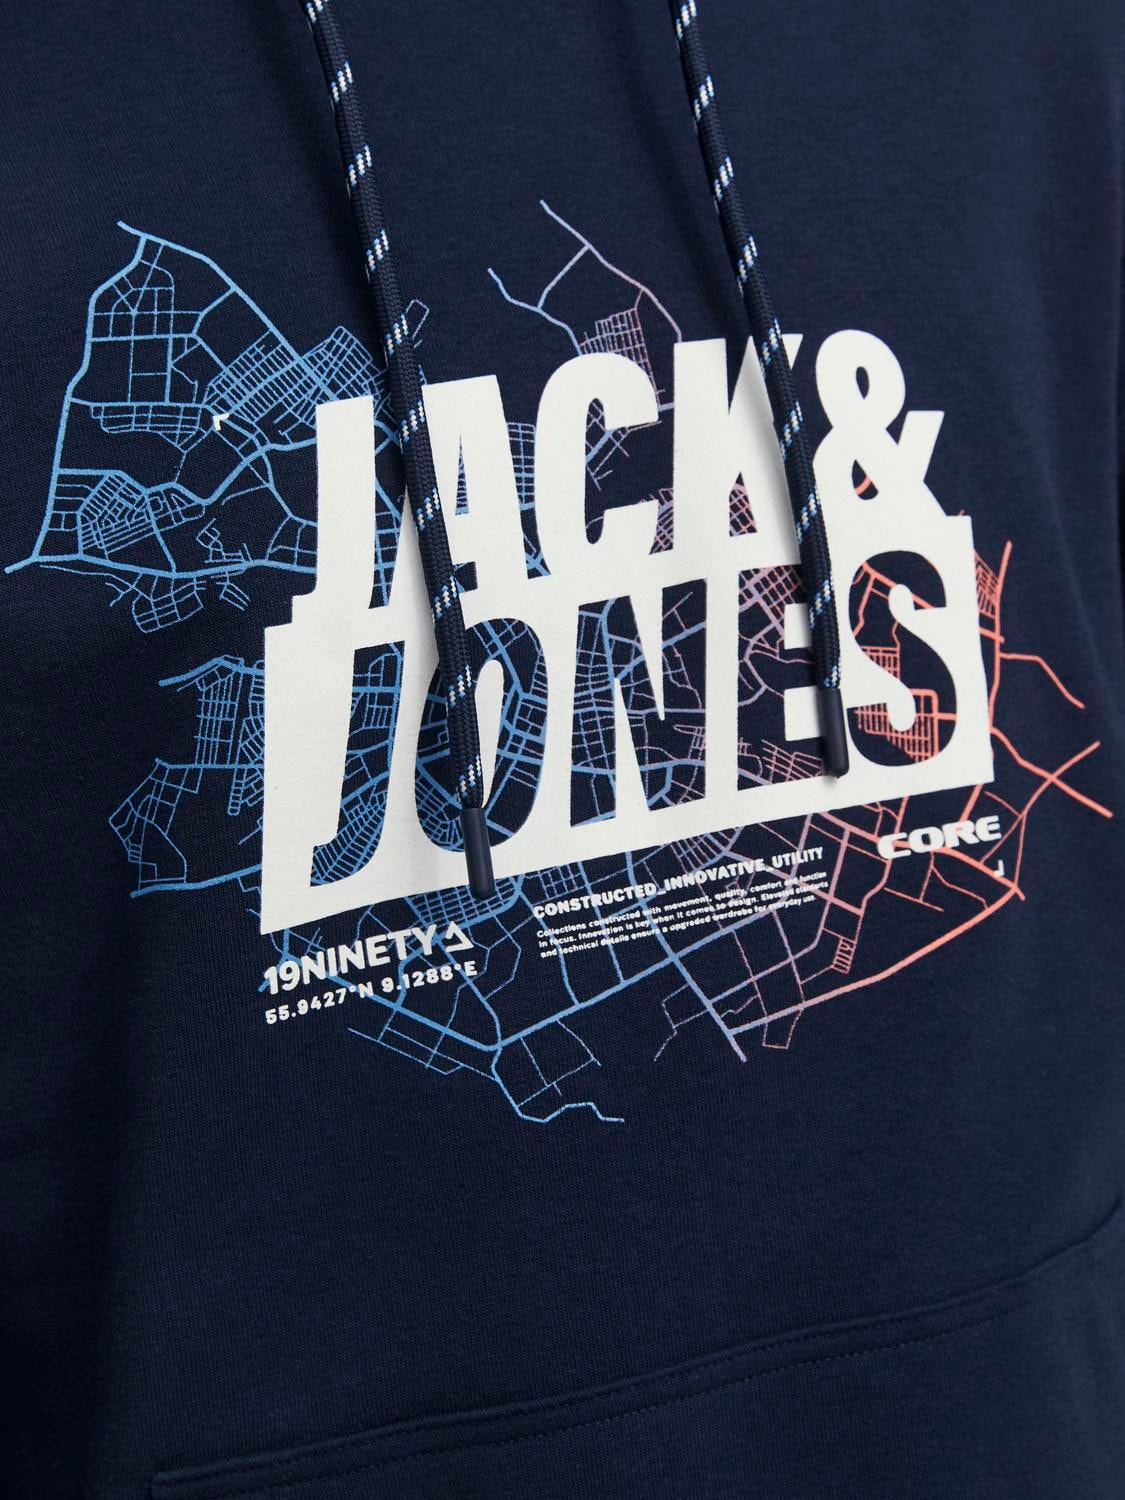 Jack & Jones Logo Hoodie -Navy Blazer - 12252310